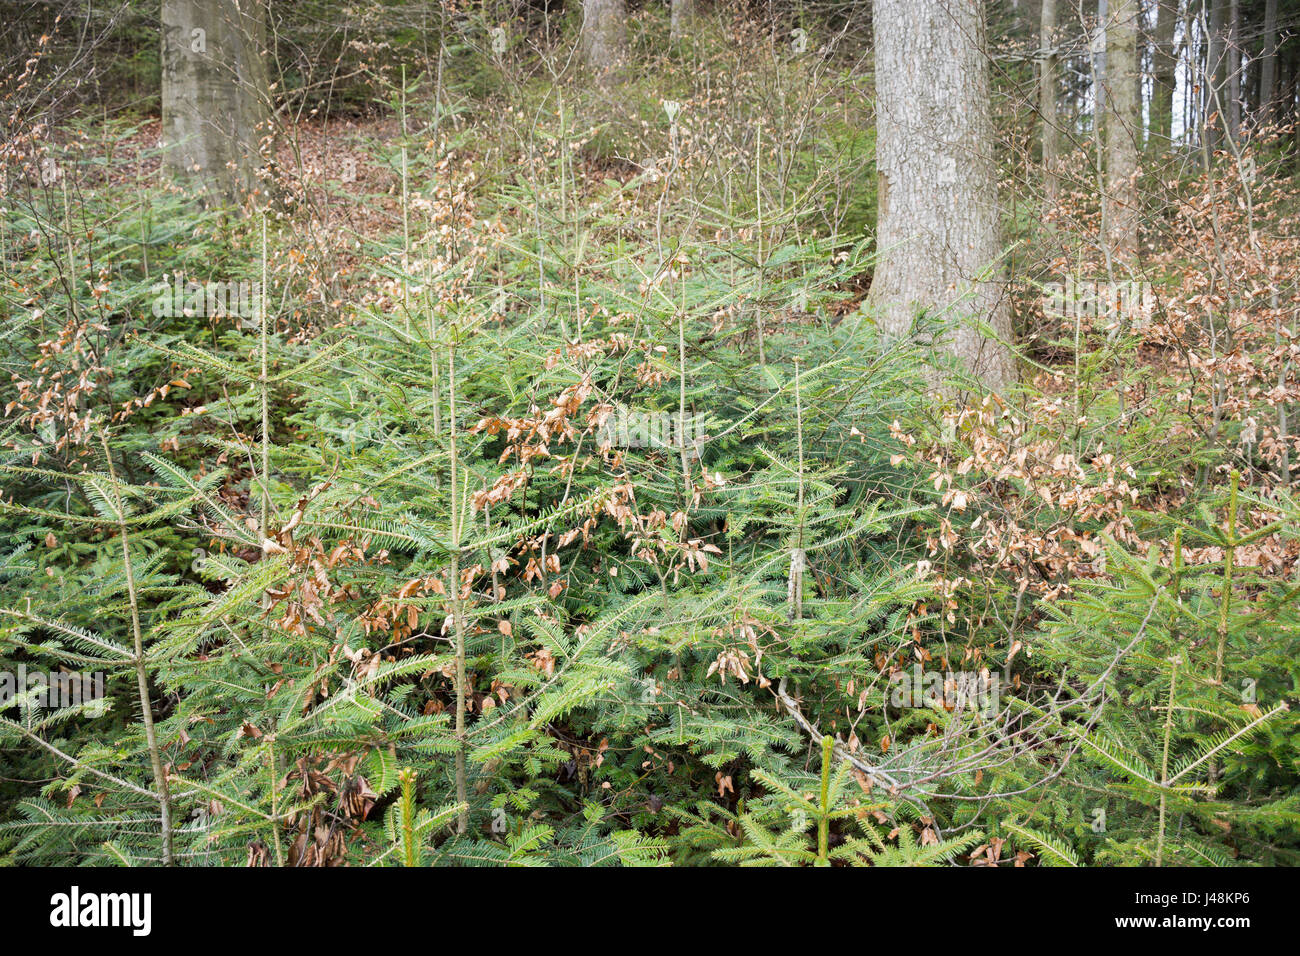 Natürliche Regeneration der Tanne, Fichte und Buche unter einem Baldachin von Overwood buchen und Tannen in einem bergigen Wald in der Steiermark, Österreich. Stockfoto